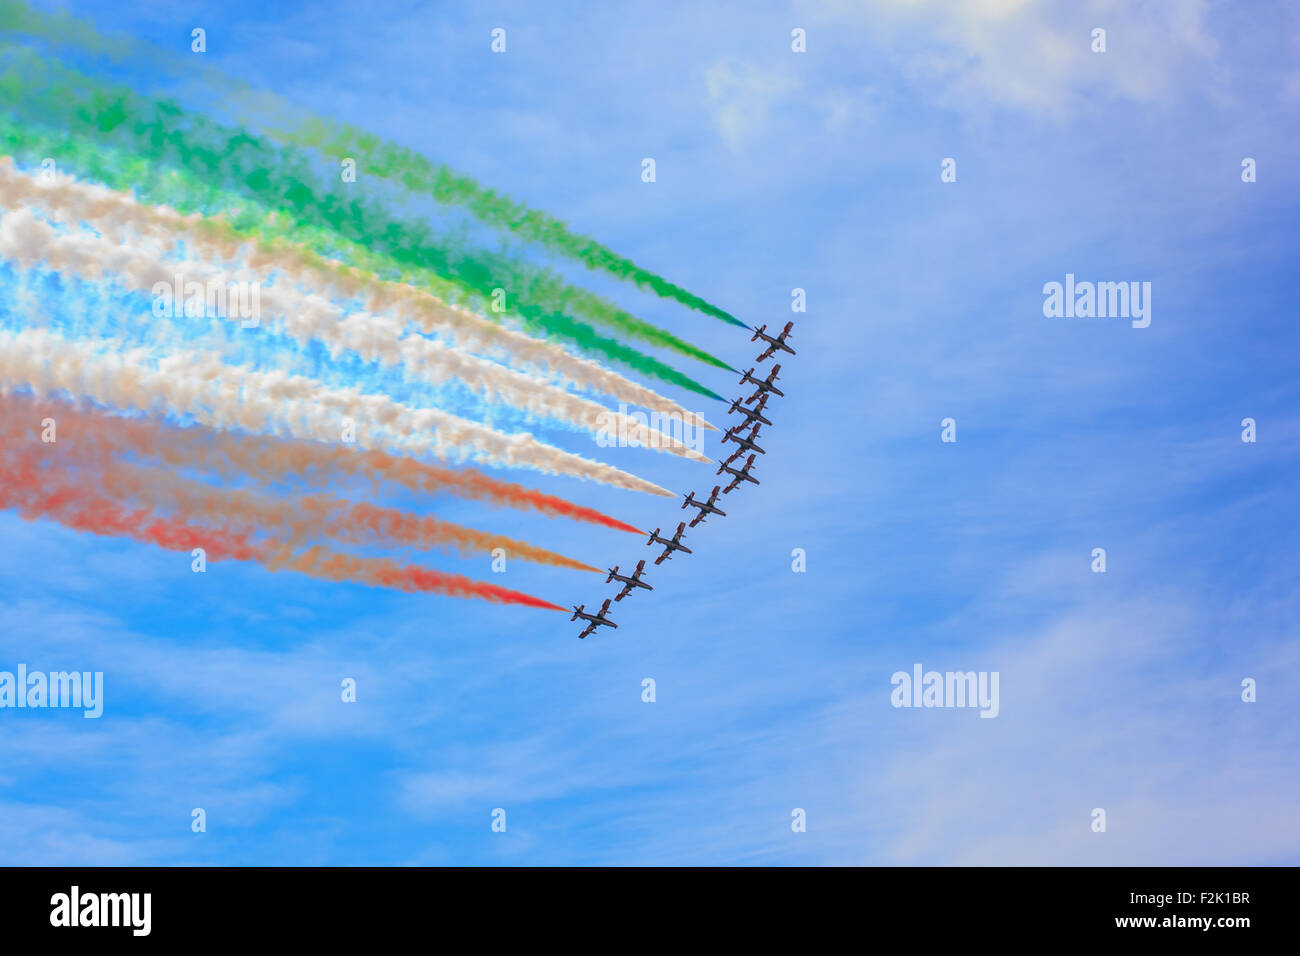 Triest, Italien - 01. Juni: Anzeigen der italienischen Militärflugzeug Frecce Tricolore "Trikolore Pfeile" in Akrobatik am 01. Juni genannt, Stockfoto